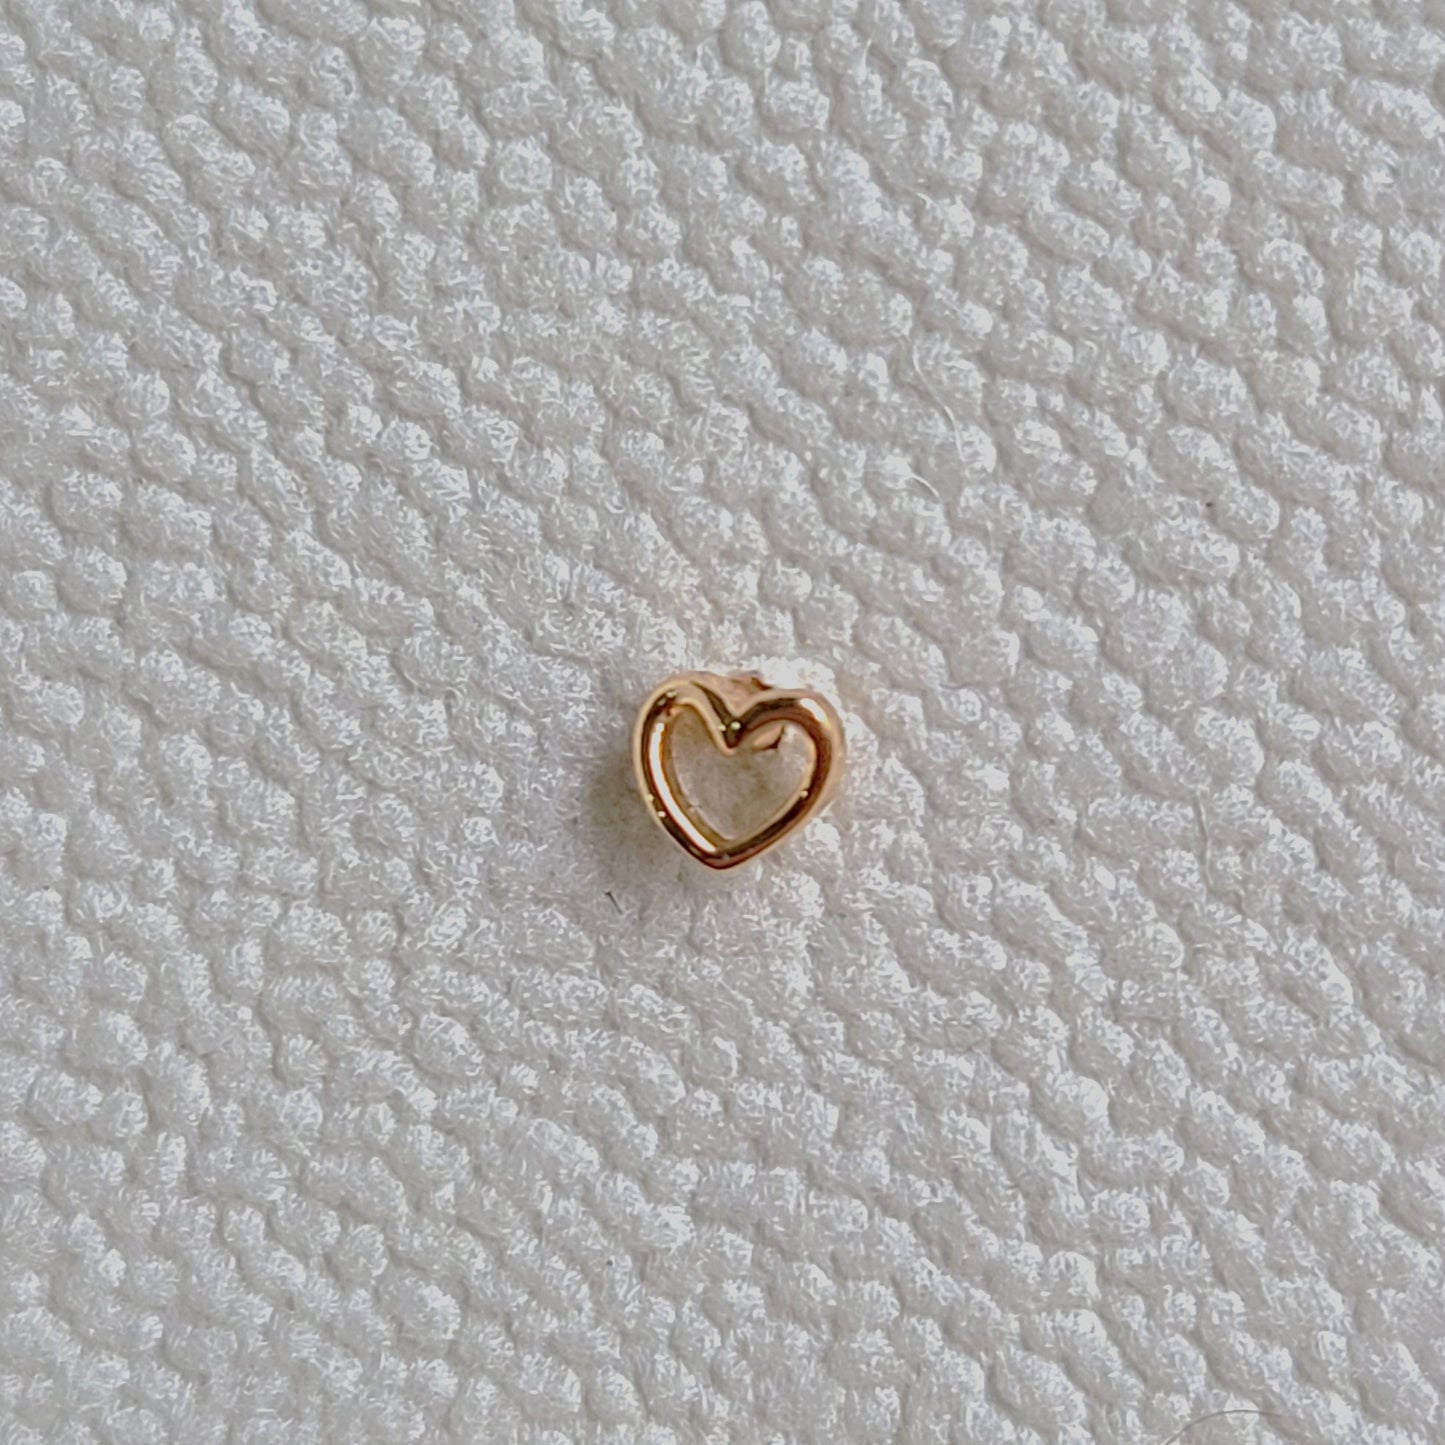 Mini Hollow Heart Earrings